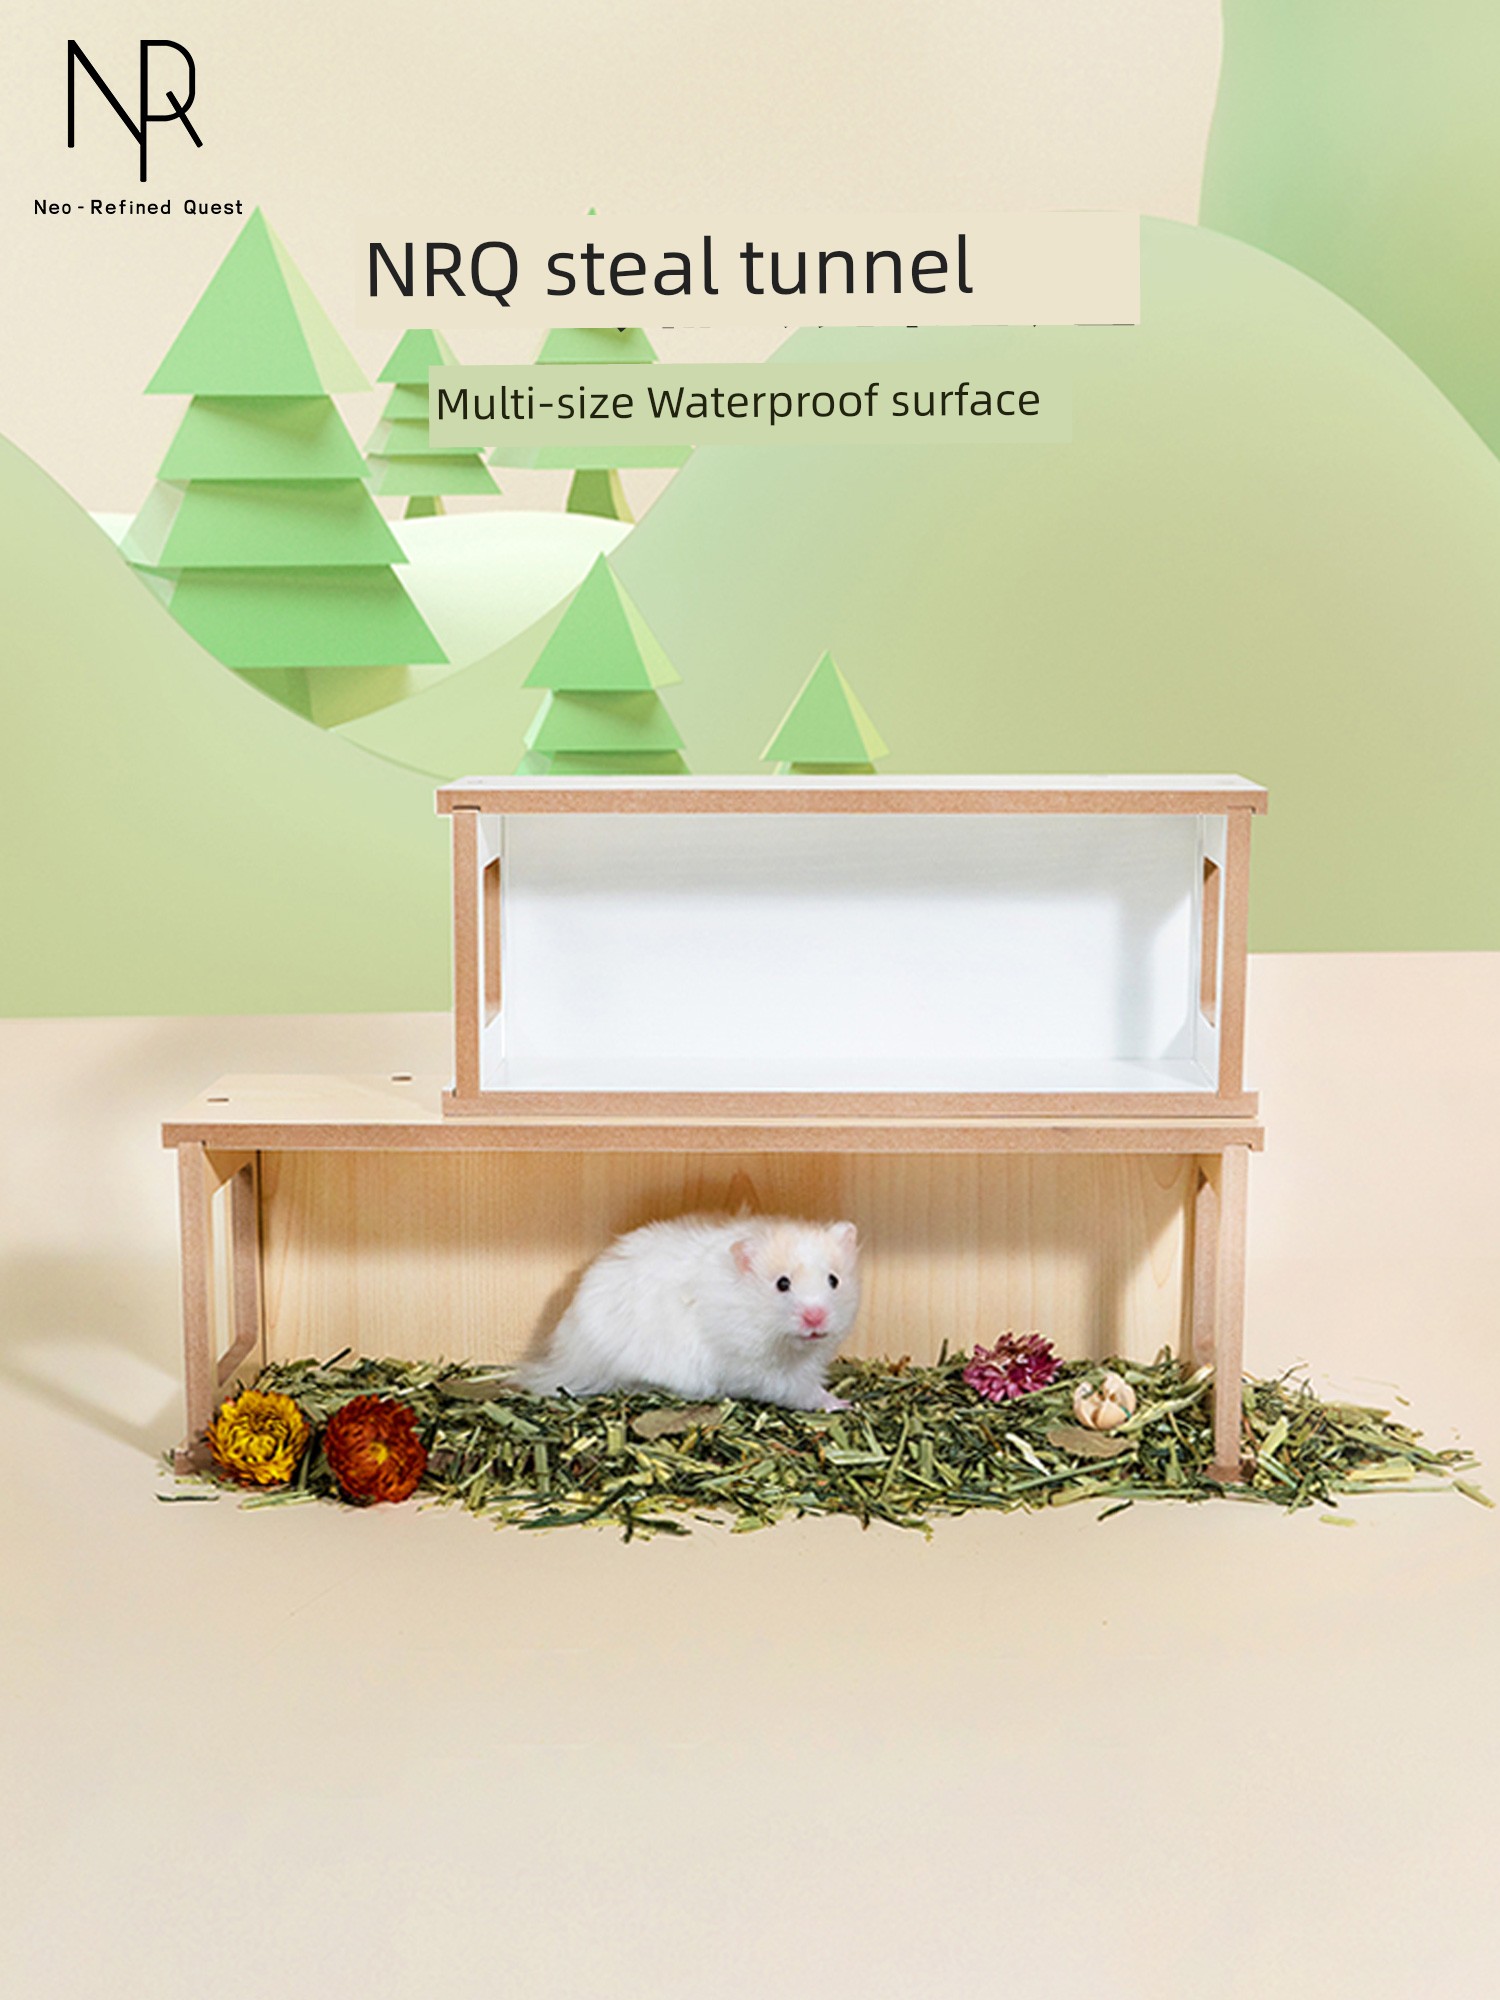 倉鼠偷窺屋 NRQ 挖掘通道 躲避屋 金絲熊 玩具 木質 隧道